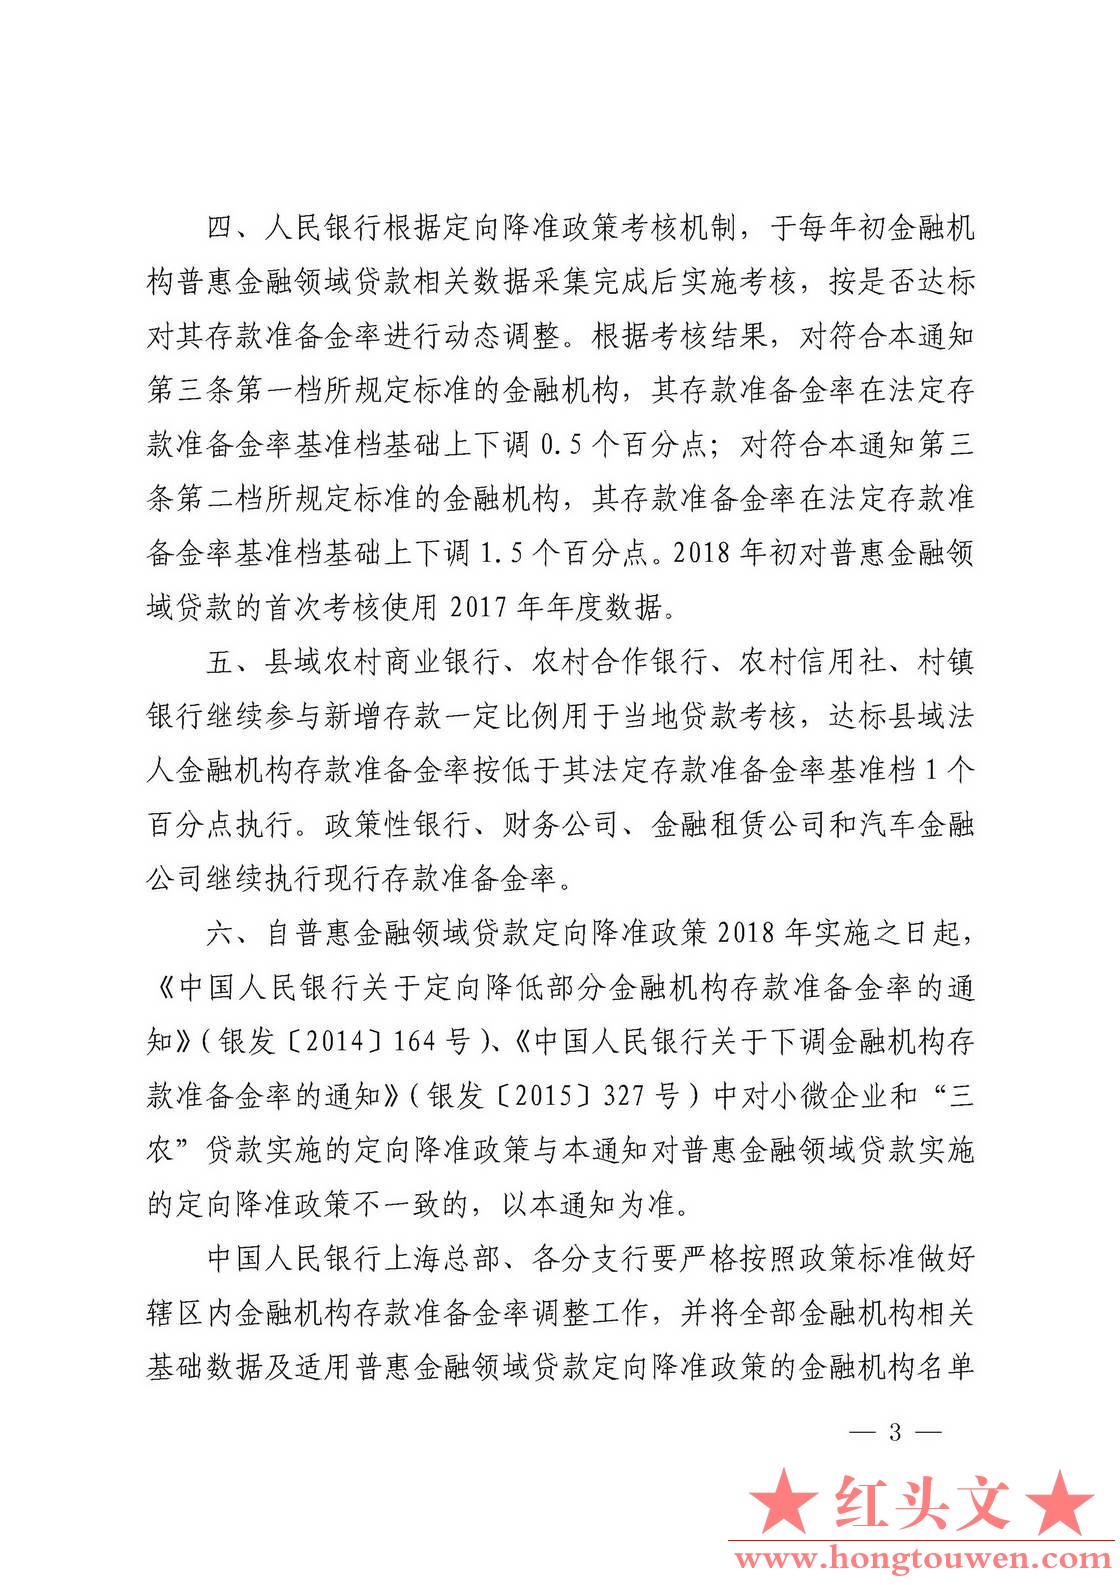 银发[2017]222号-中国人民银行关于对普惠金融实施定向降准的通知_页面_3.jpg.jpg